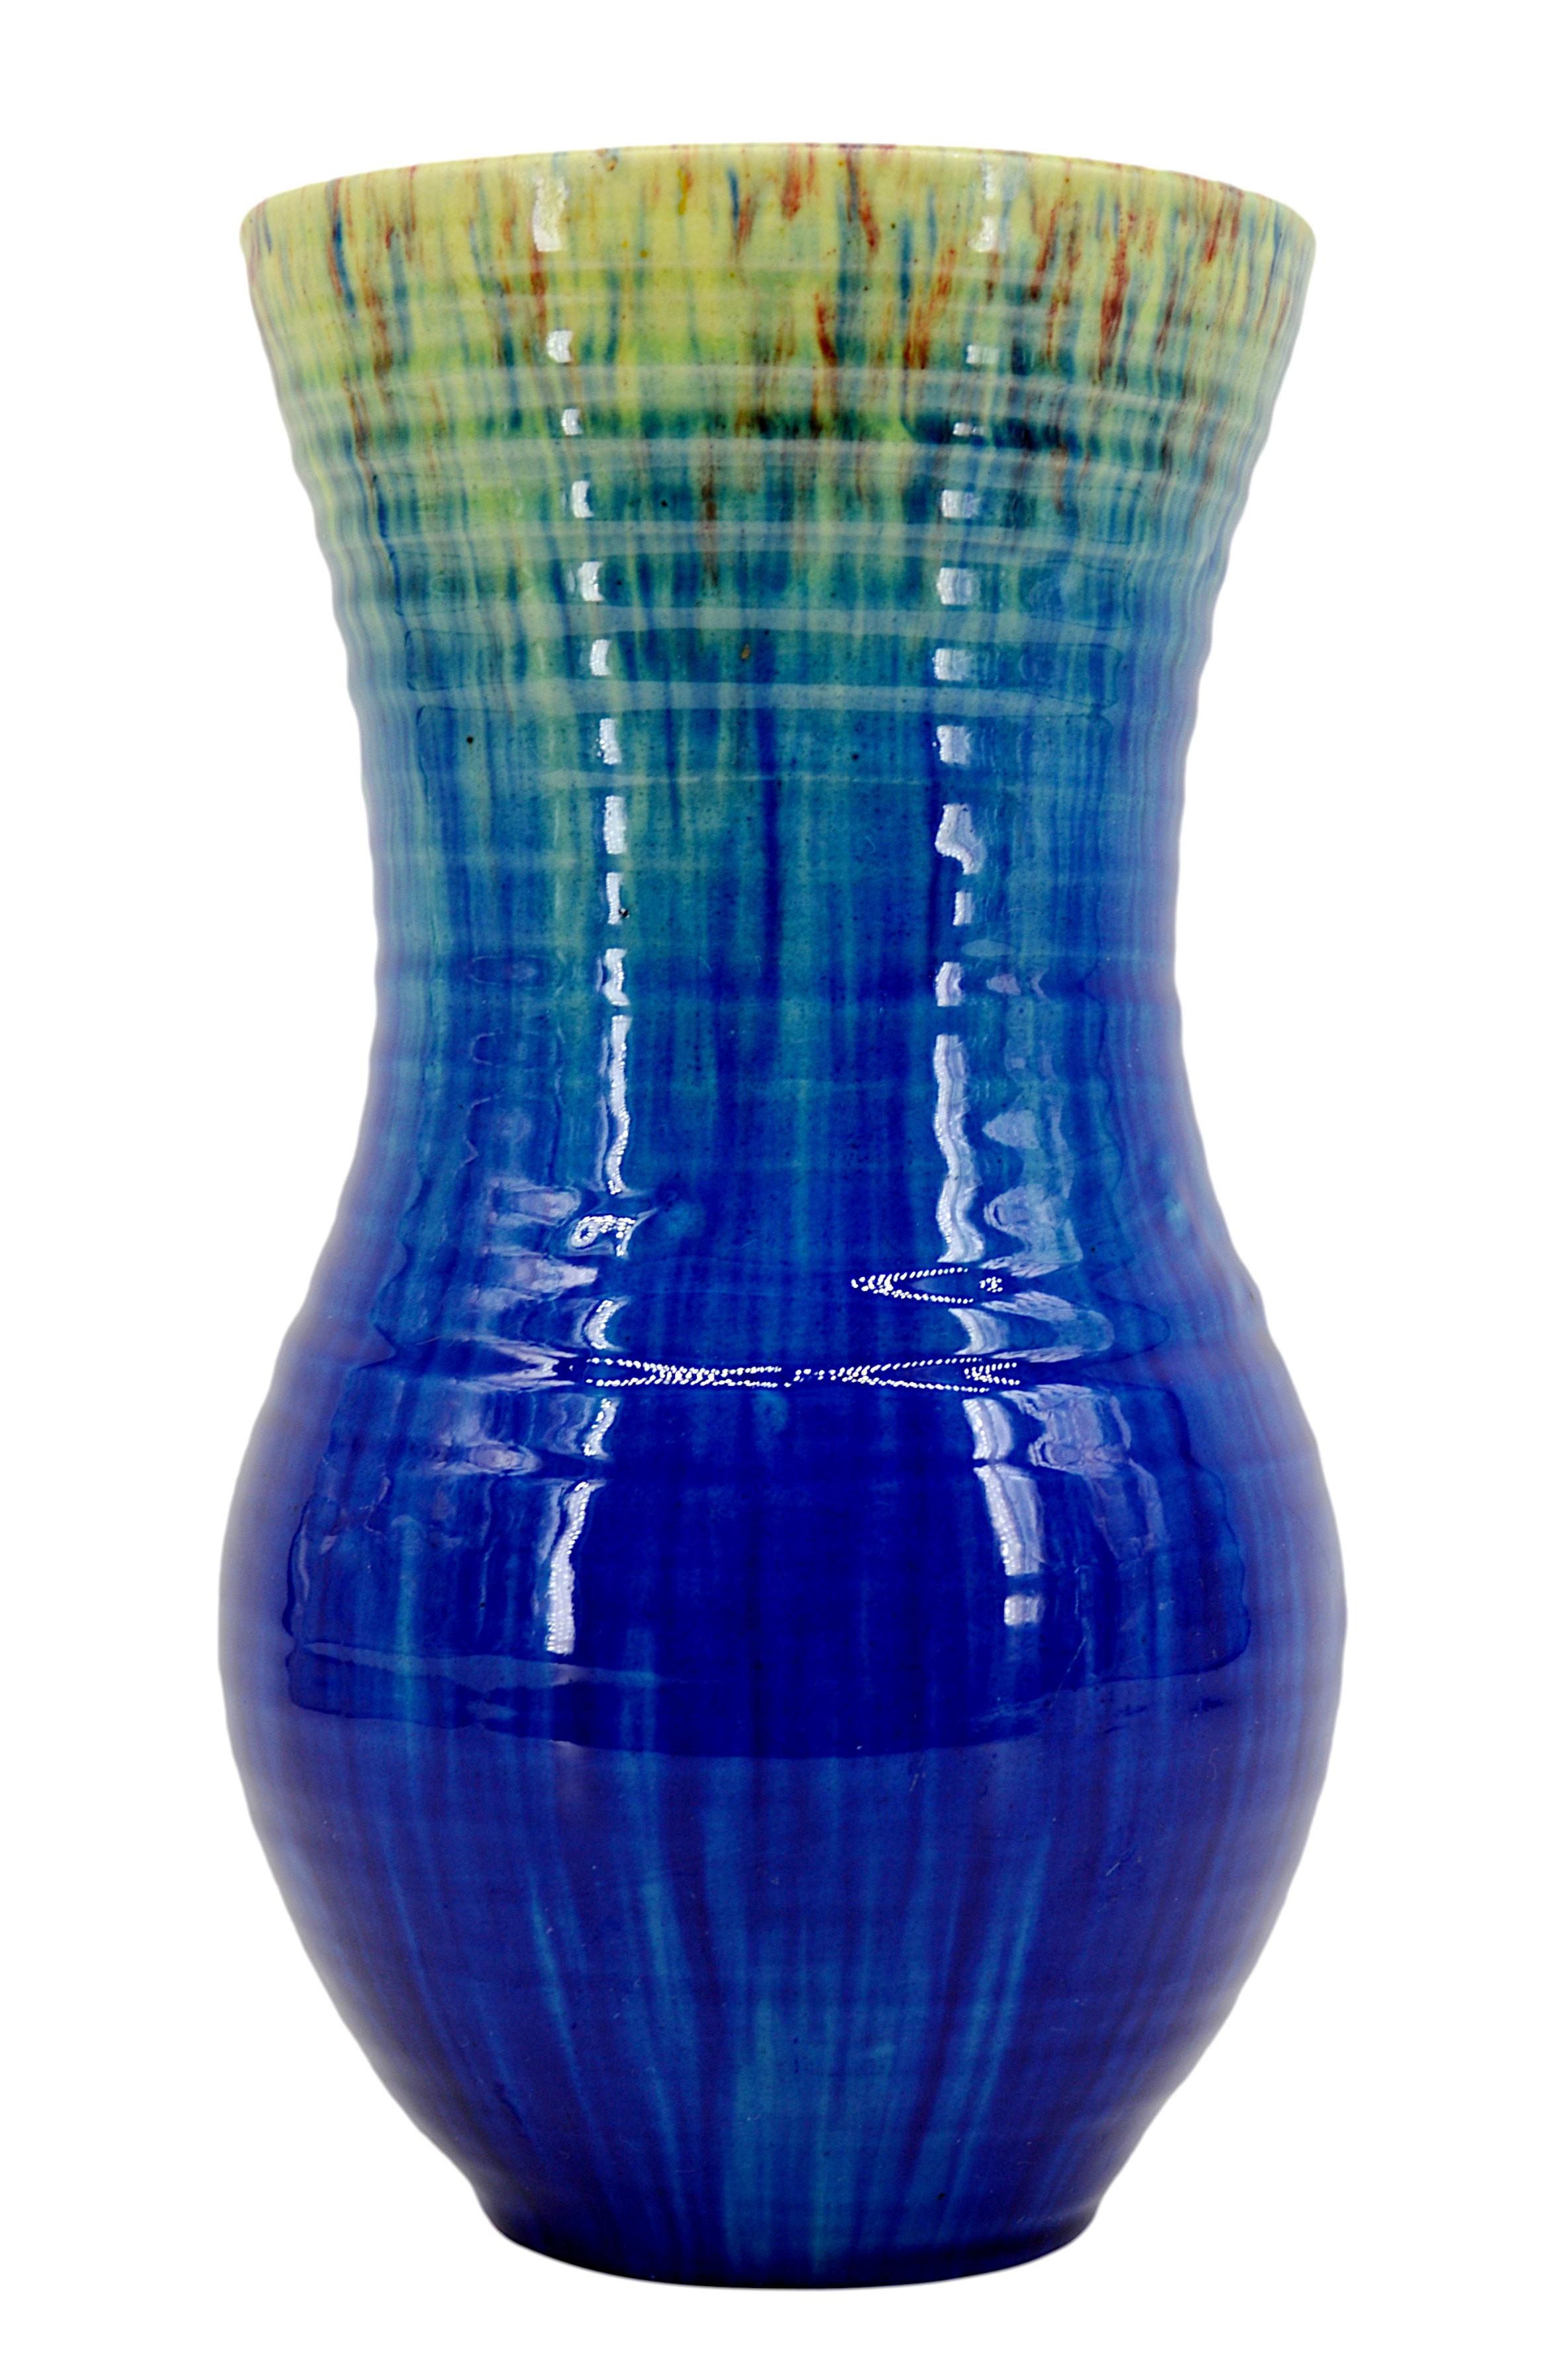 Französische Vase aus der Mitte des Jahrhunderts von Accolay, Frankreich, 1950er Jahre. Blaue, gelbe (in manchen Teilen grüne) und braune Vase. 
Maße: Höhe: 28,3 cm (11,15